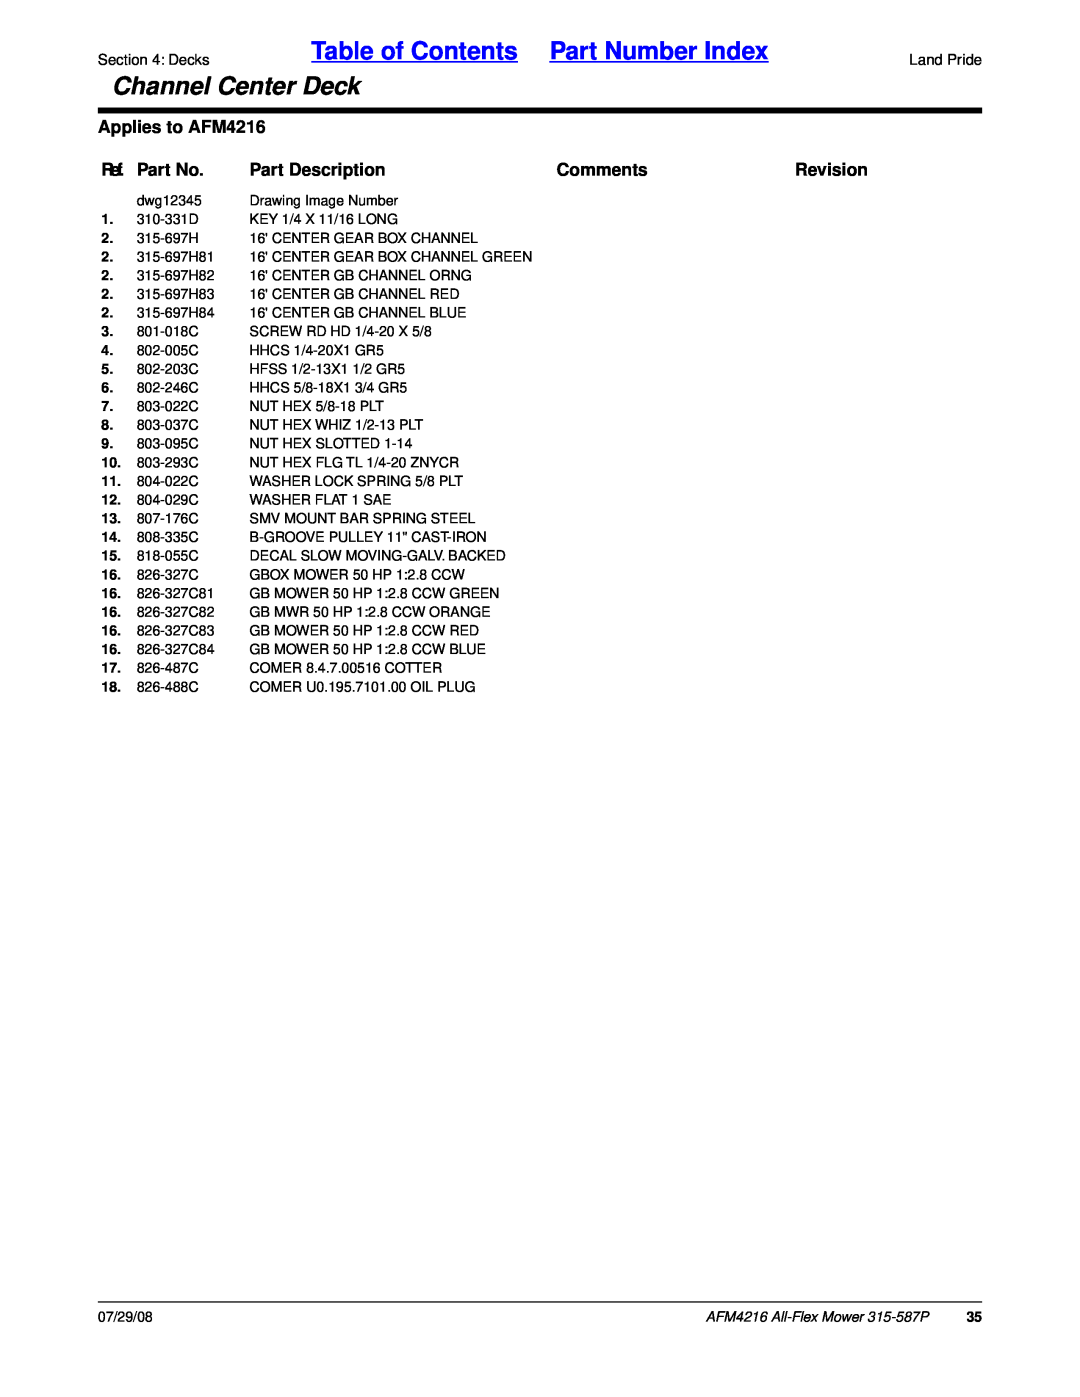 Land Pride Table of Contents Part Number Index, Channel Center Deck, Applies to AFM4216, Ref. Part No, Part Description 